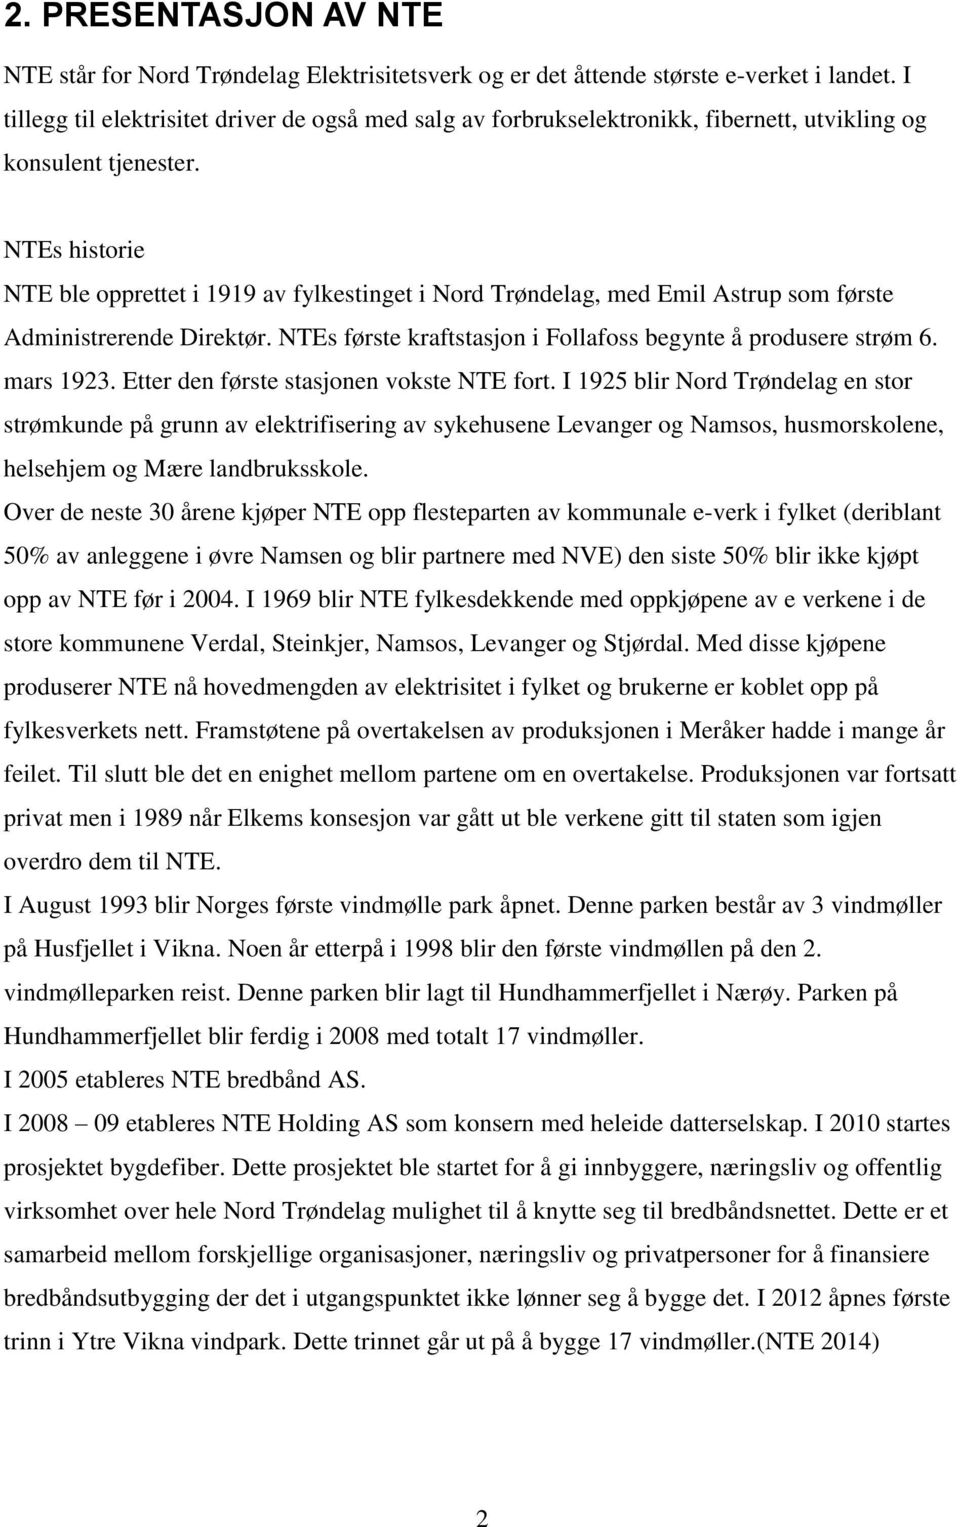 NTEs historie NTE ble opprettet i 1919 av fylkestinget i Nord Trøndelag, med Emil Astrup som første Administrerende Direktør. NTEs første kraftstasjon i Follafoss begynte å produsere strøm 6.